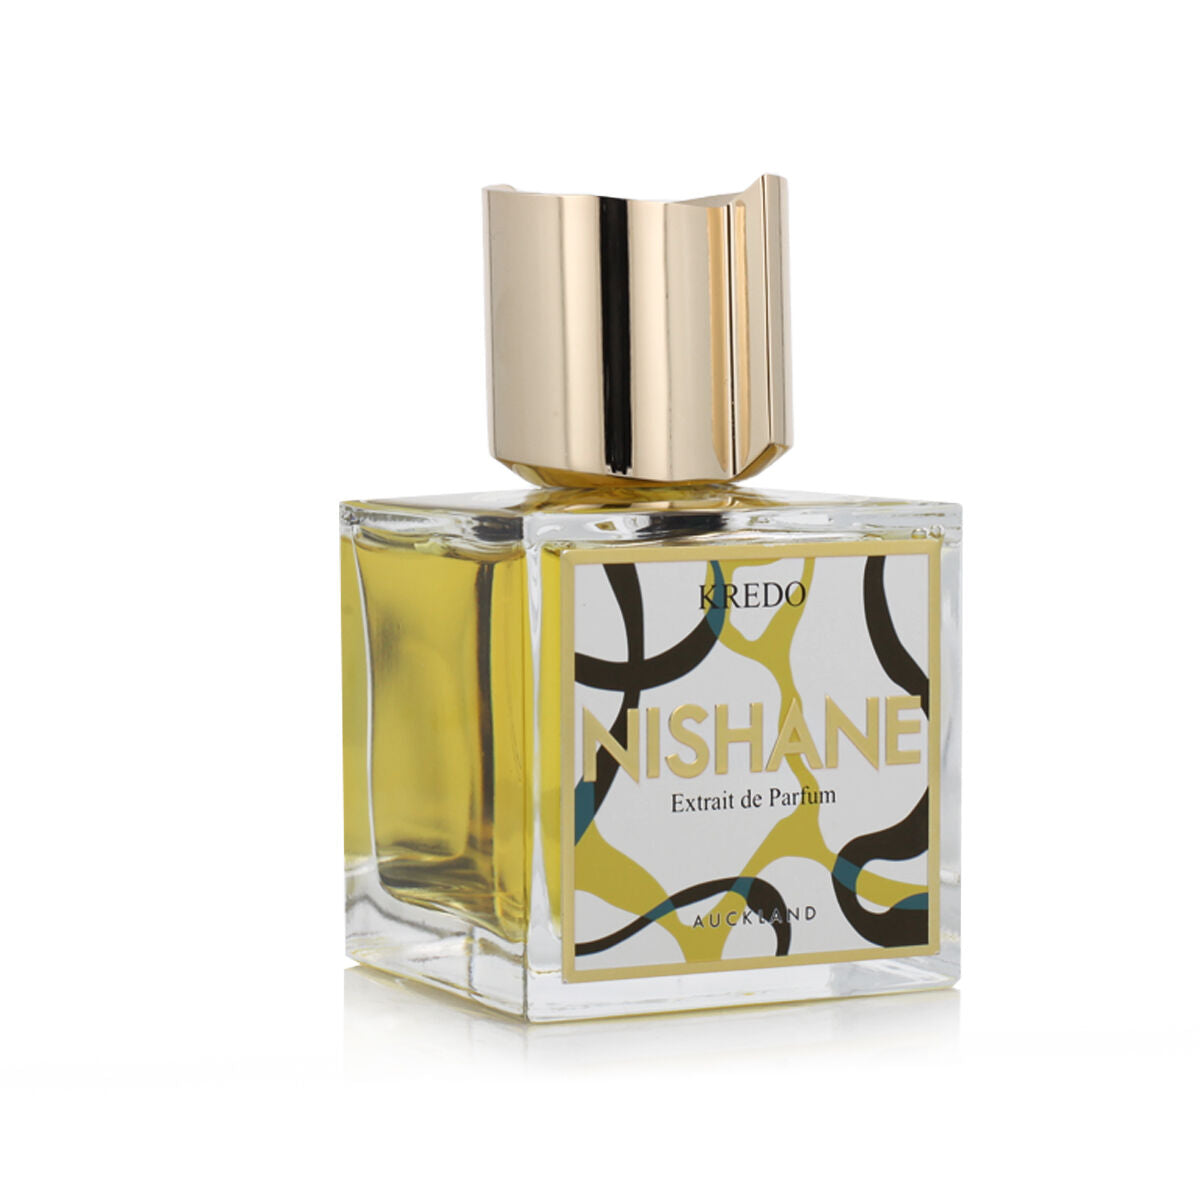 Unisex Perfume Nishane Kredo 100 ml-1